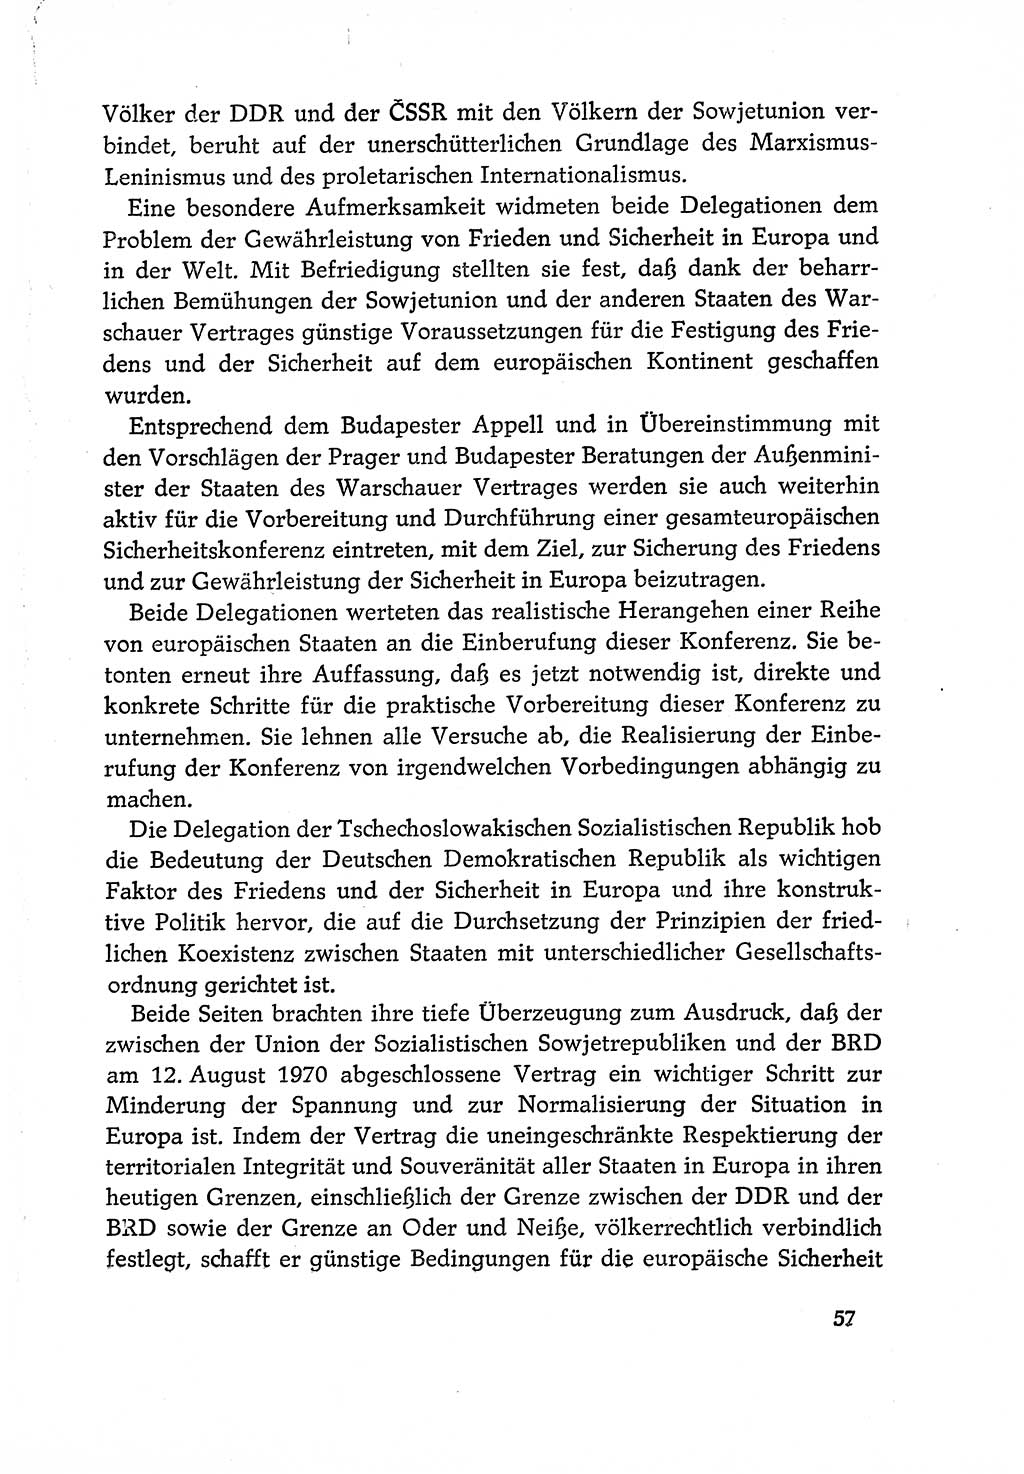 Dokumente der Sozialistischen Einheitspartei Deutschlands (SED) [Deutsche Demokratische Republik (DDR)] 1970-1971, Seite 57 (Dok. SED DDR 1970-1971, S. 57)